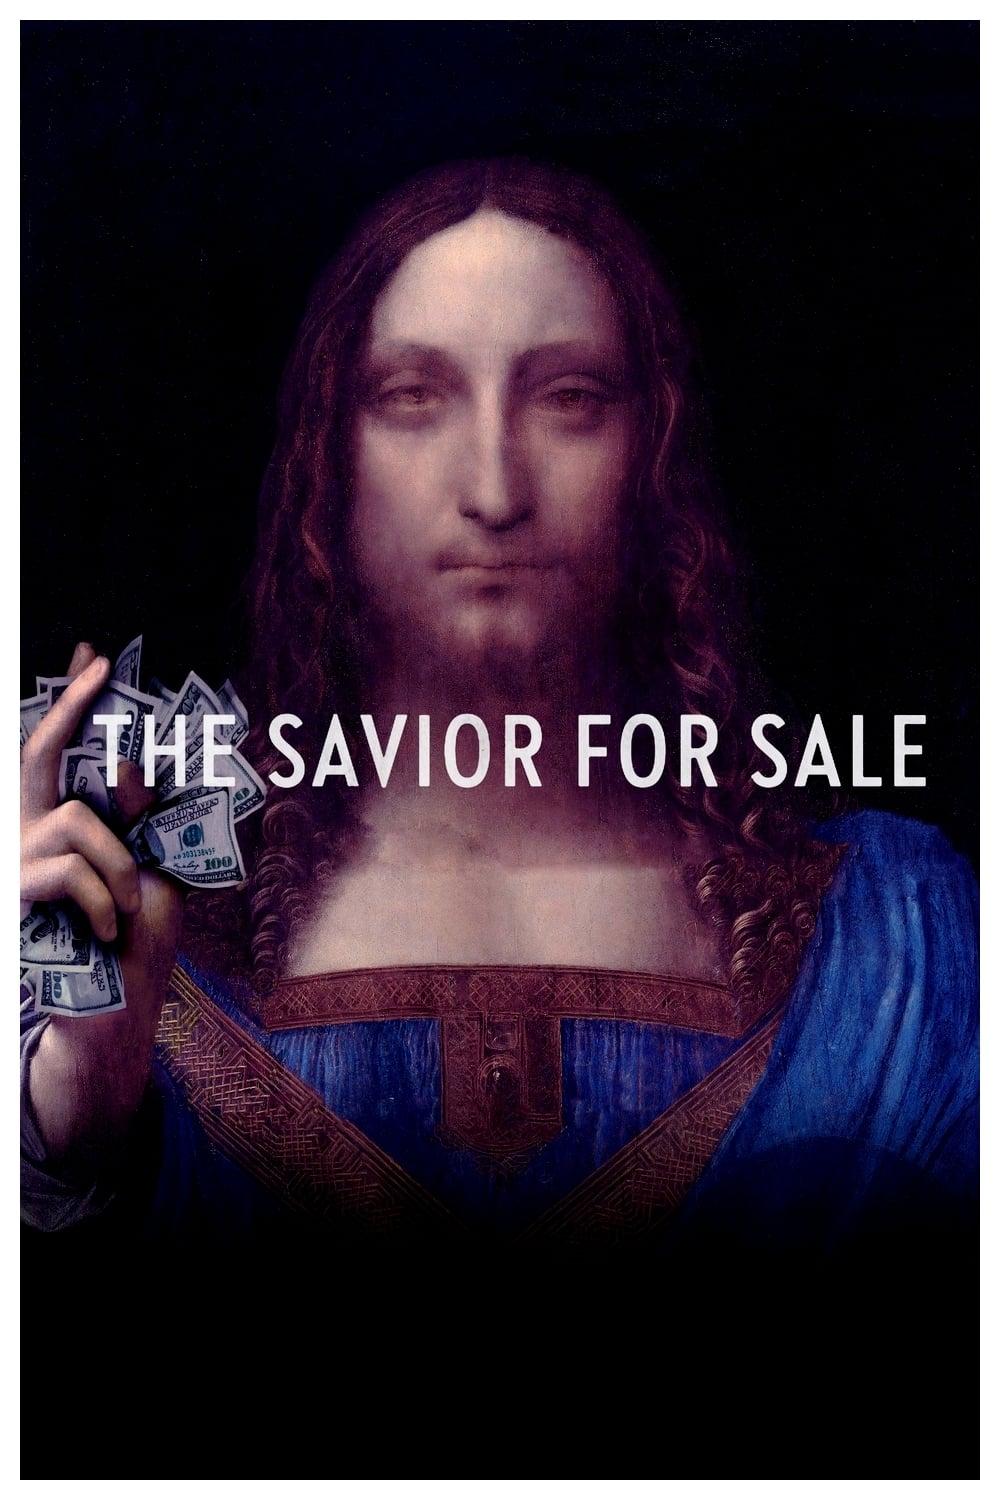 The Savior for Sale poster